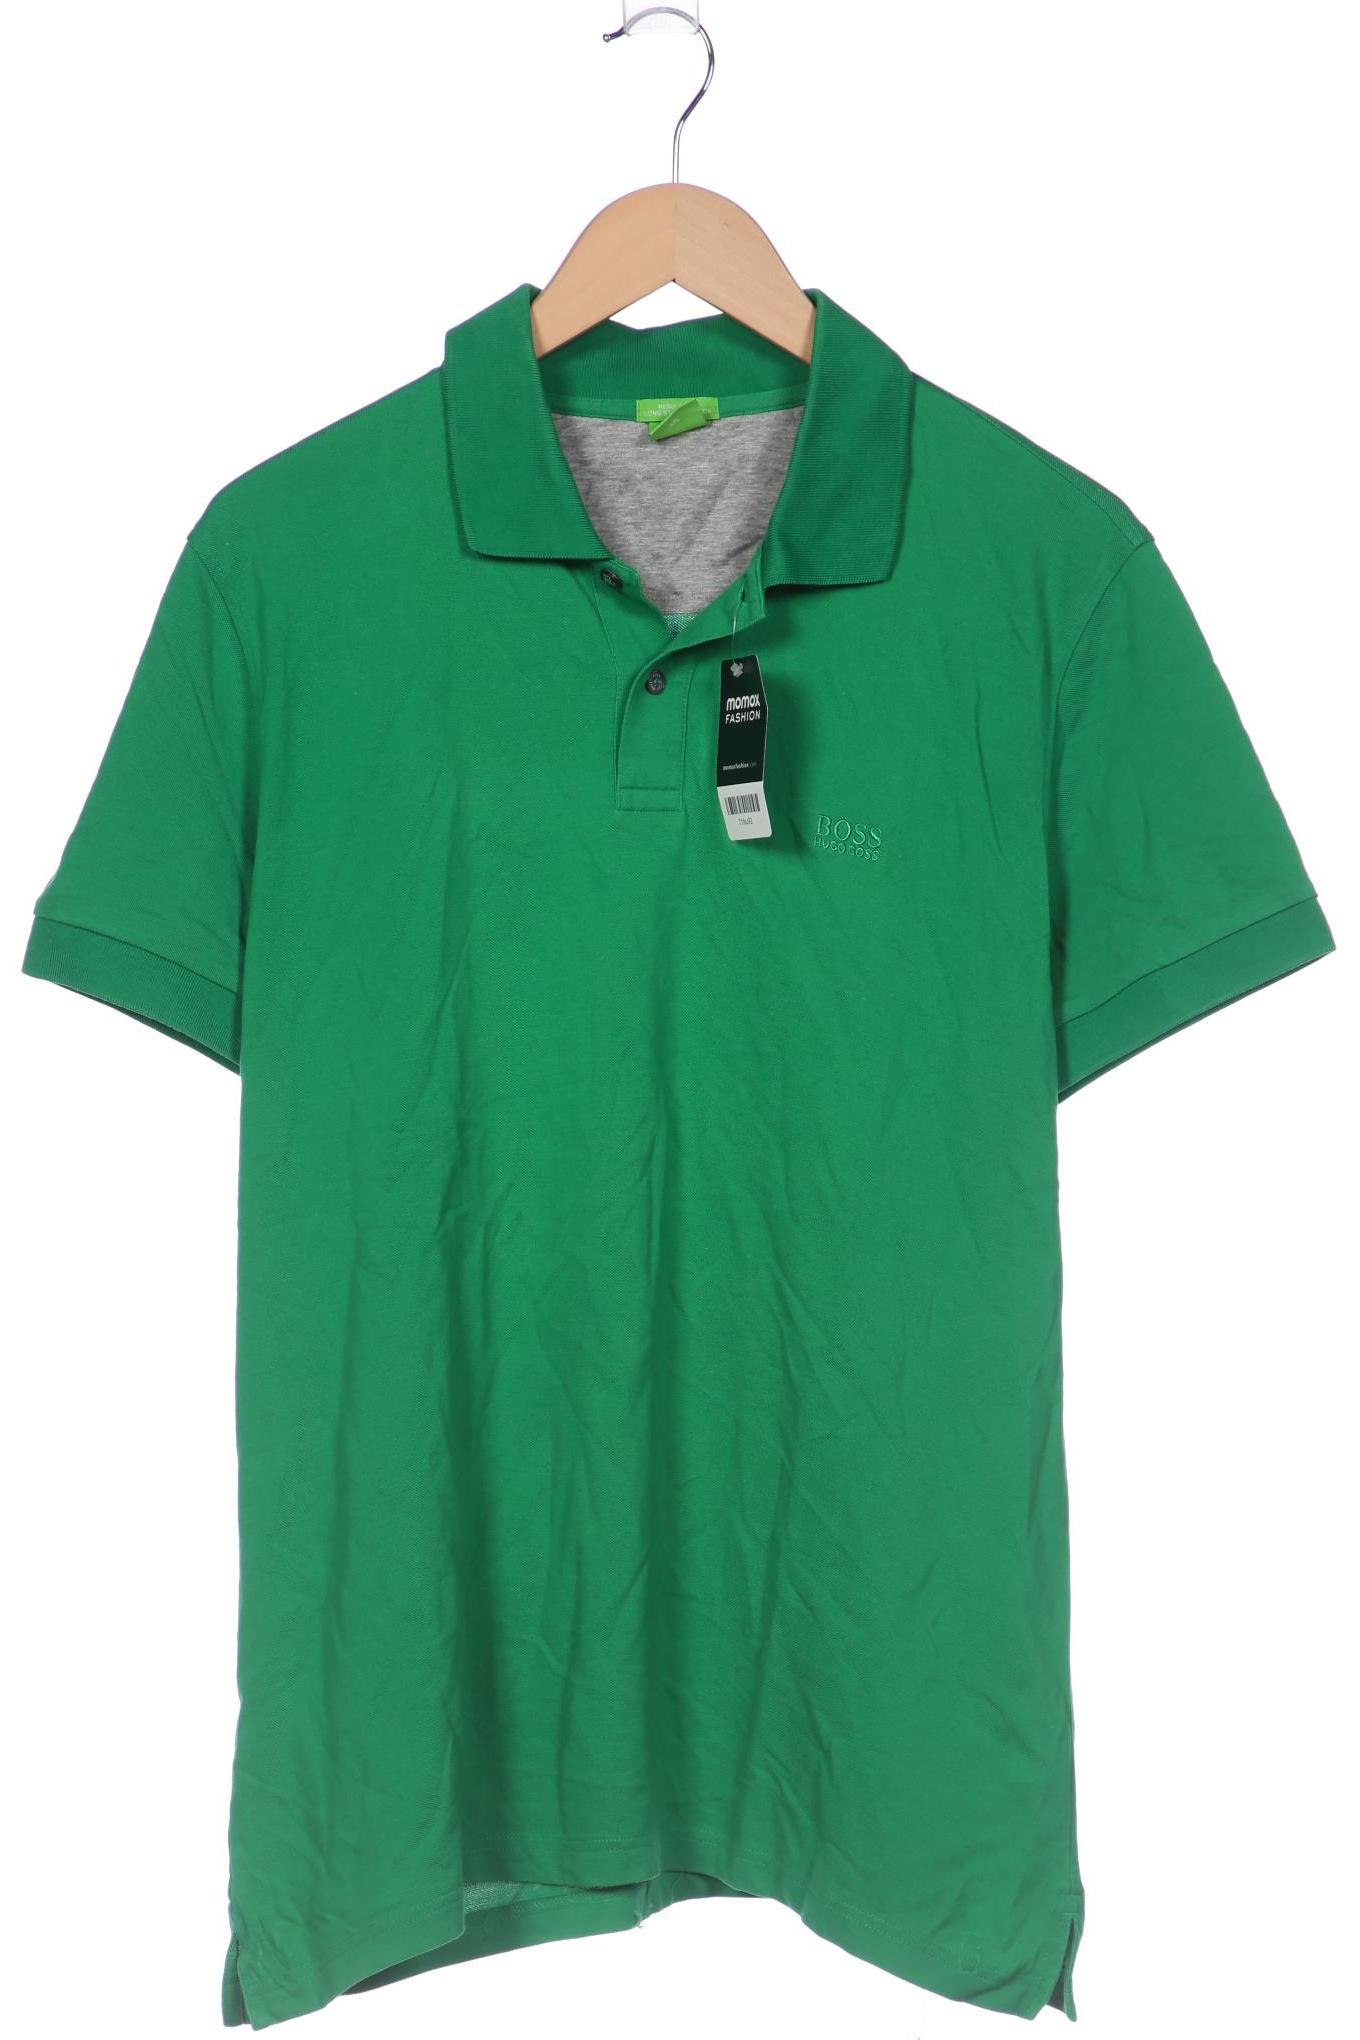 Boss Green Herren Poloshirt, grün, Gr. 56 von BOSS Green